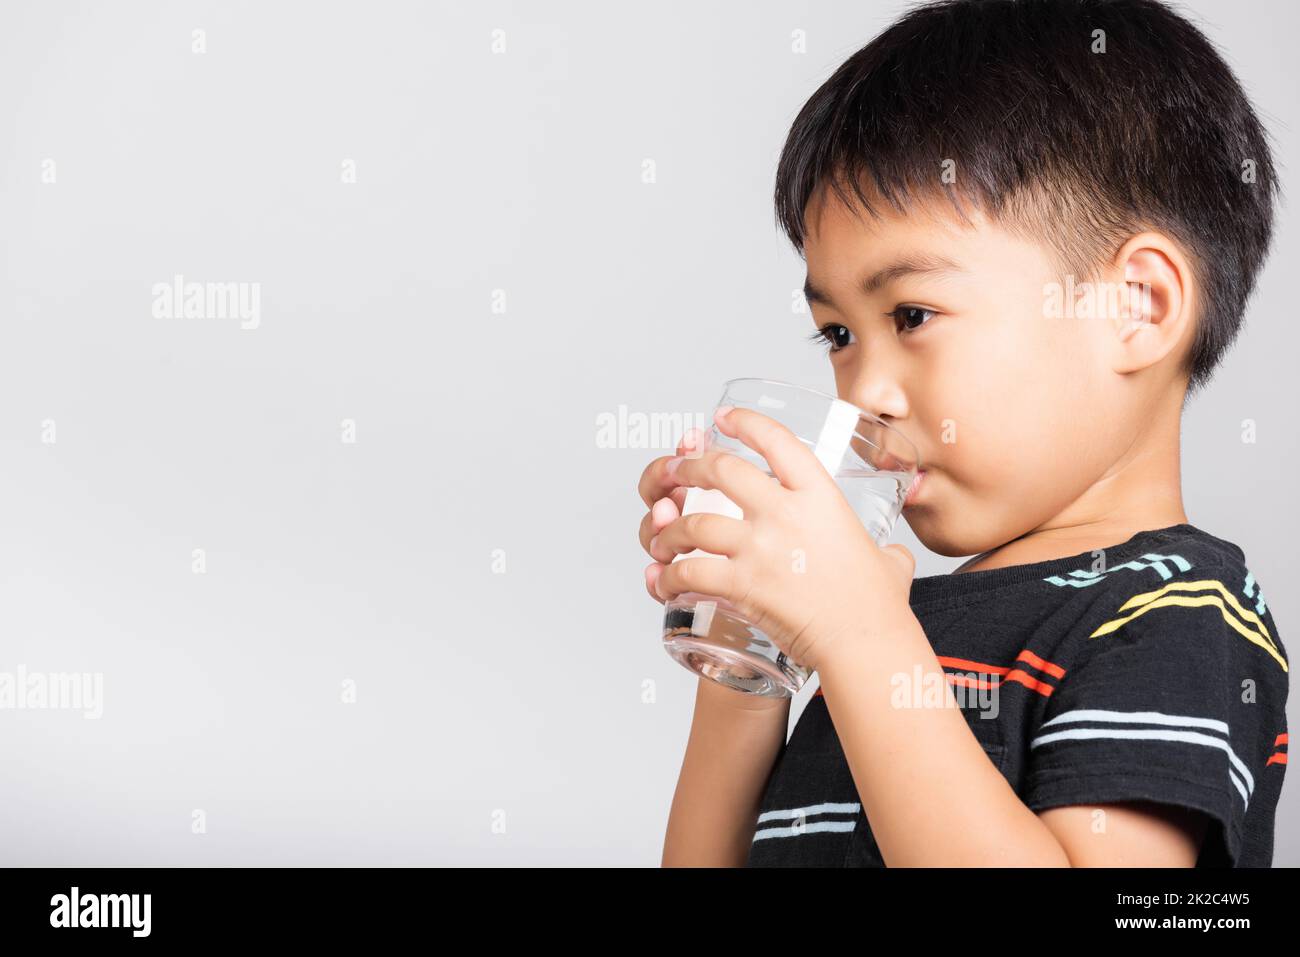 Bambino piccolo carino ragazzo di 5-6 anni sorriso bere acqua fresca dal vetro in studio ripresa isolato Foto Stock